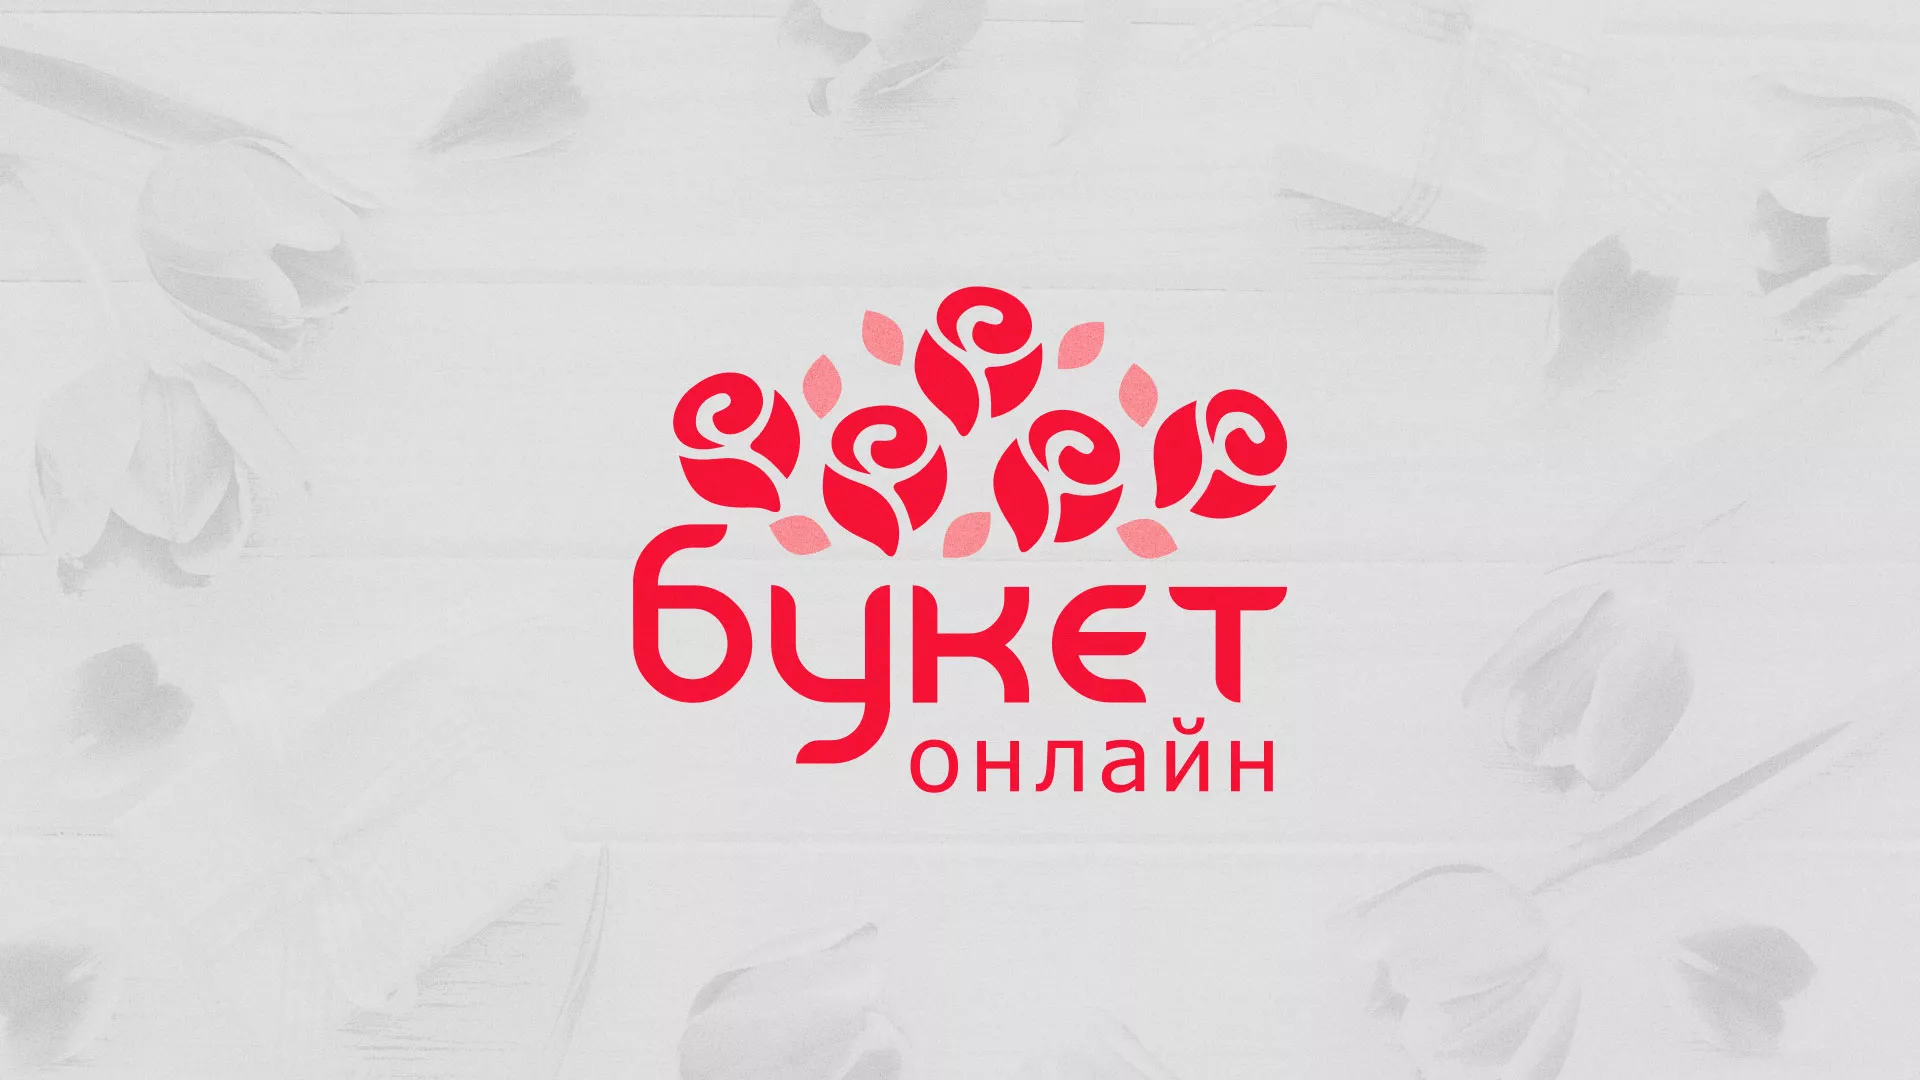 Создание интернет-магазина «Букет-онлайн» по цветам в Суровикино